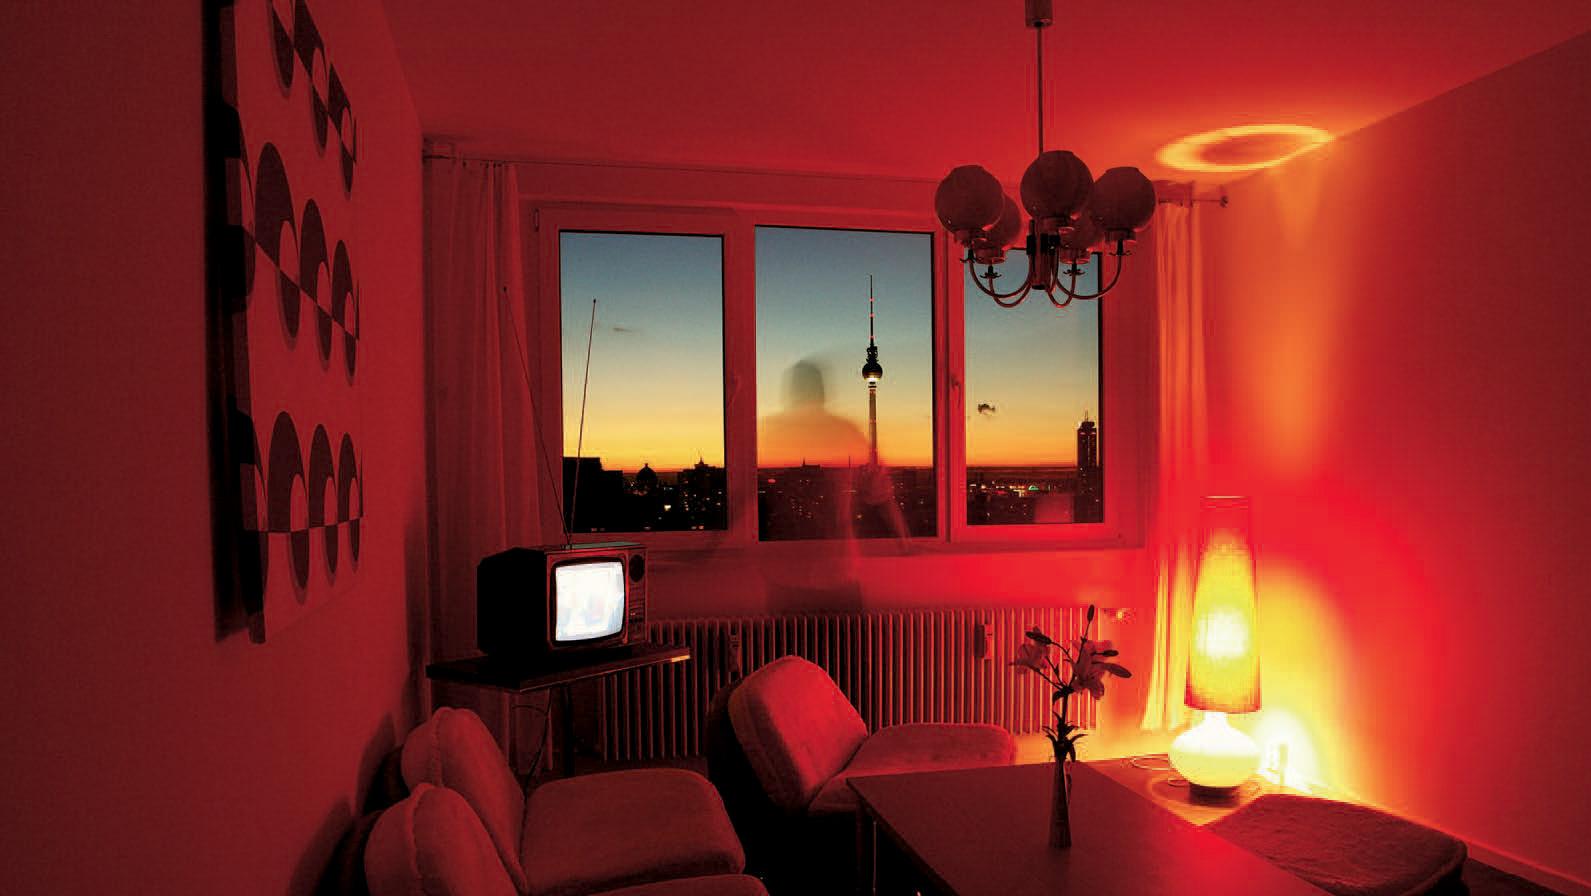 Chambre de l’Ostel, un hôtel à Berlin entièrement aménagé avec du mobilier et des... Les objets de la RDA: de la décharge à la vitrine 